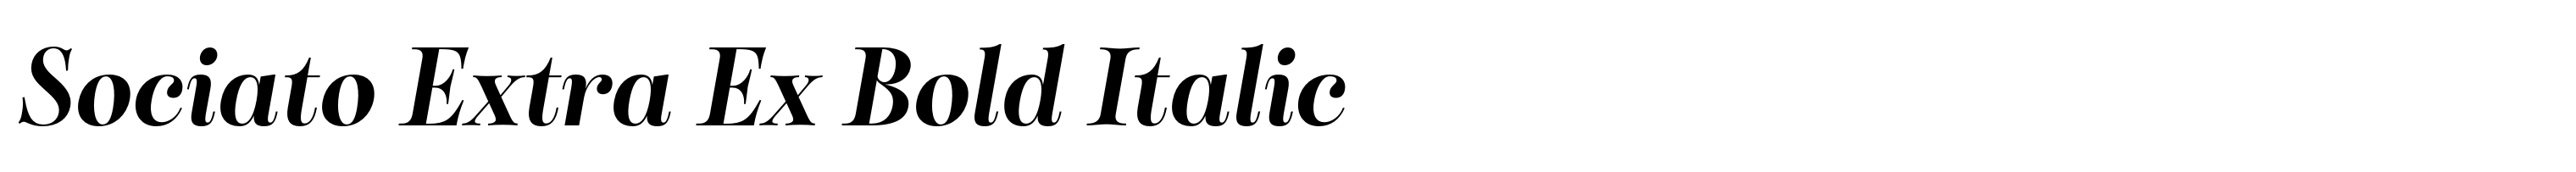 Sociato Extra Ex Bold Italic